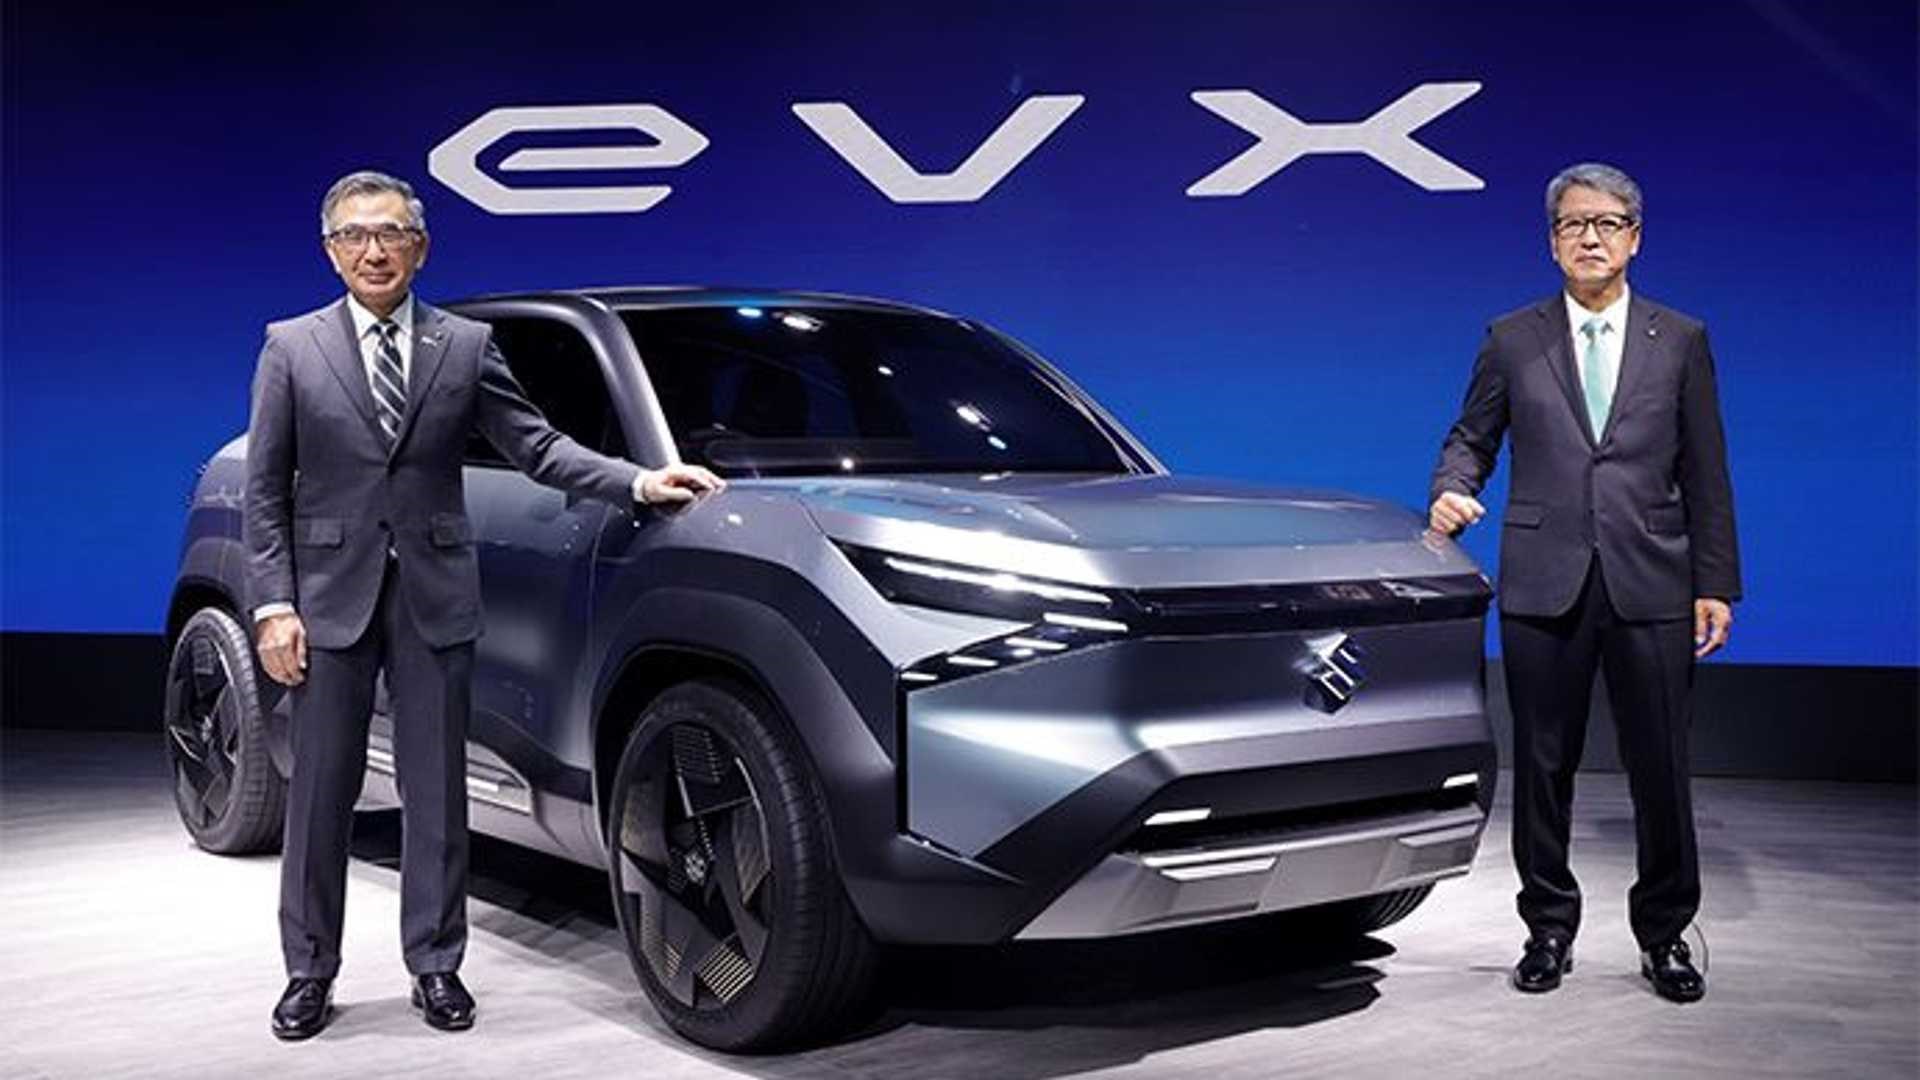 Suzuki eVX konsepti tanıtıldı: İşte tasarımı ve özellikleri